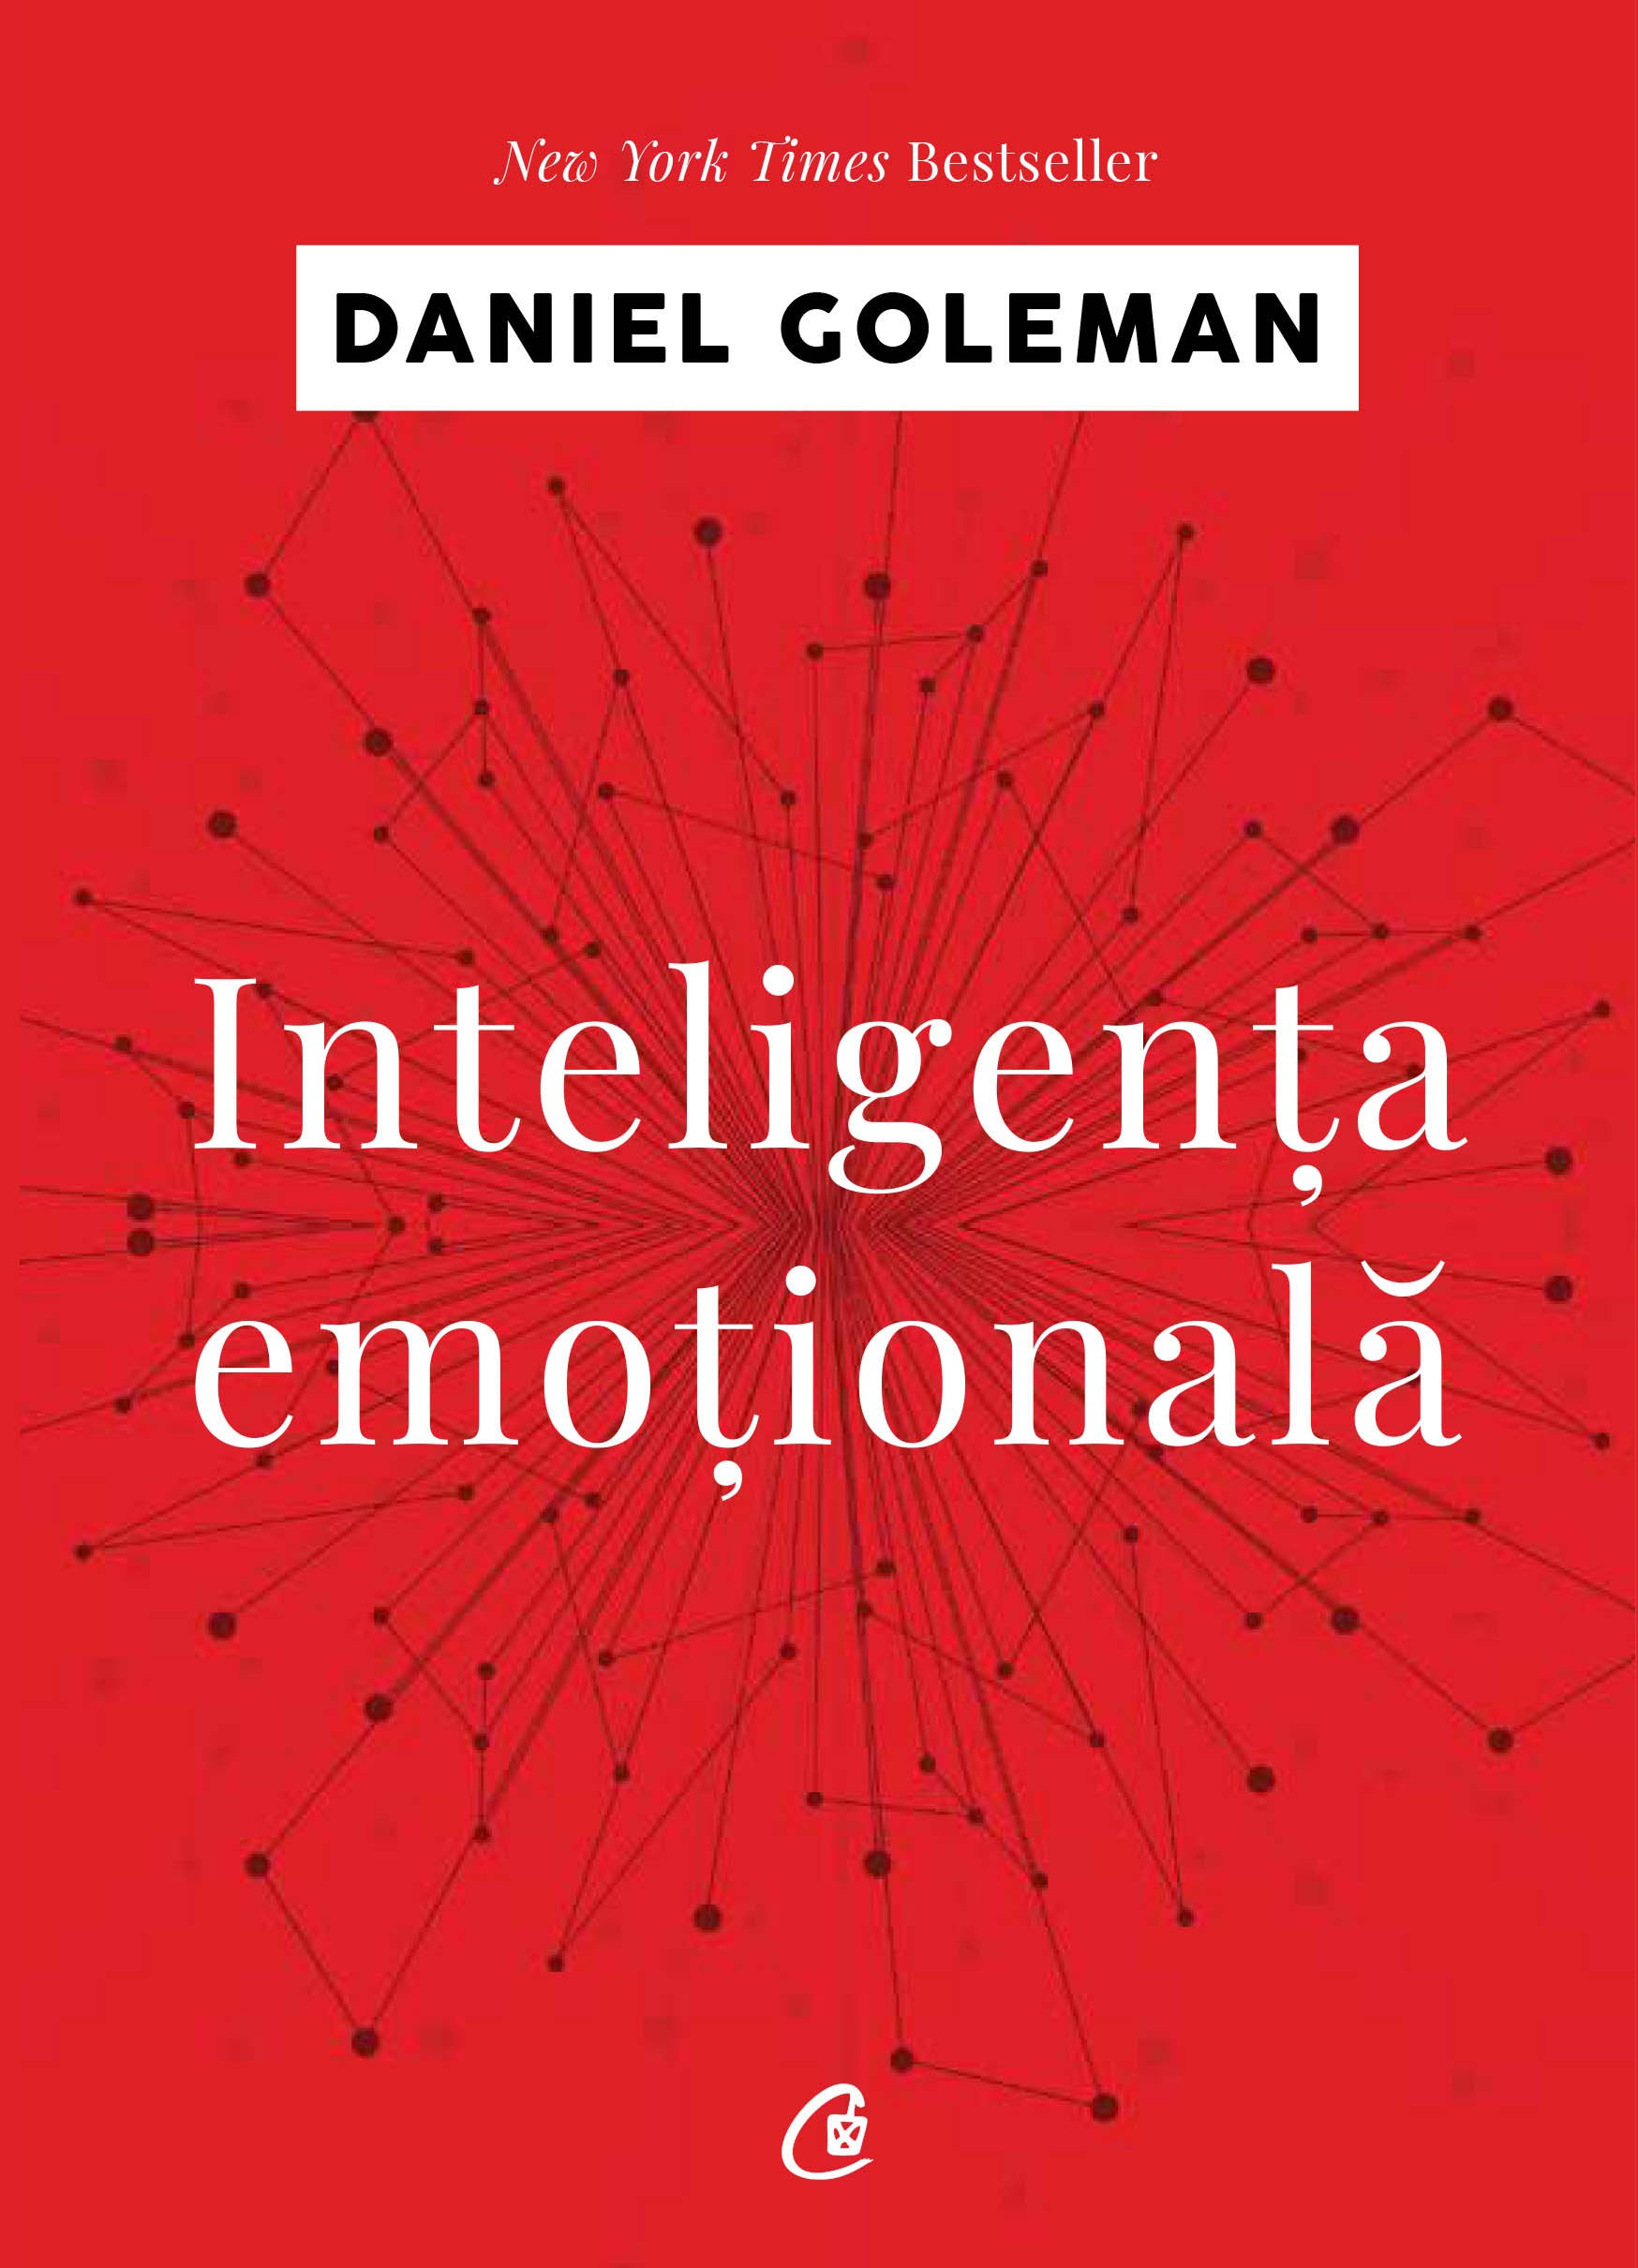 Inteligenta emotionala | Daniel Goleman carturesti.ro poza noua